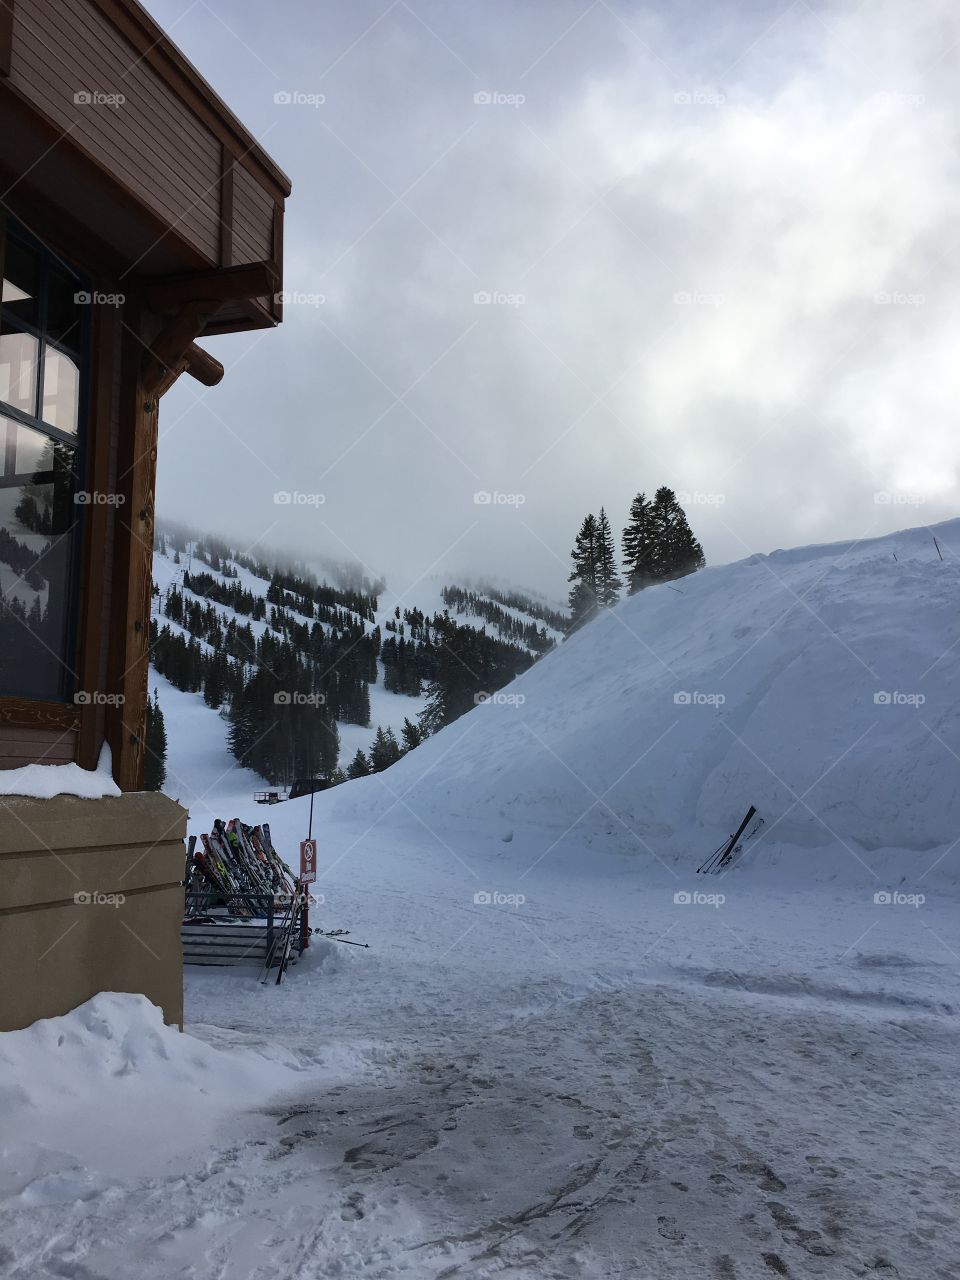 Snow Ski Resort